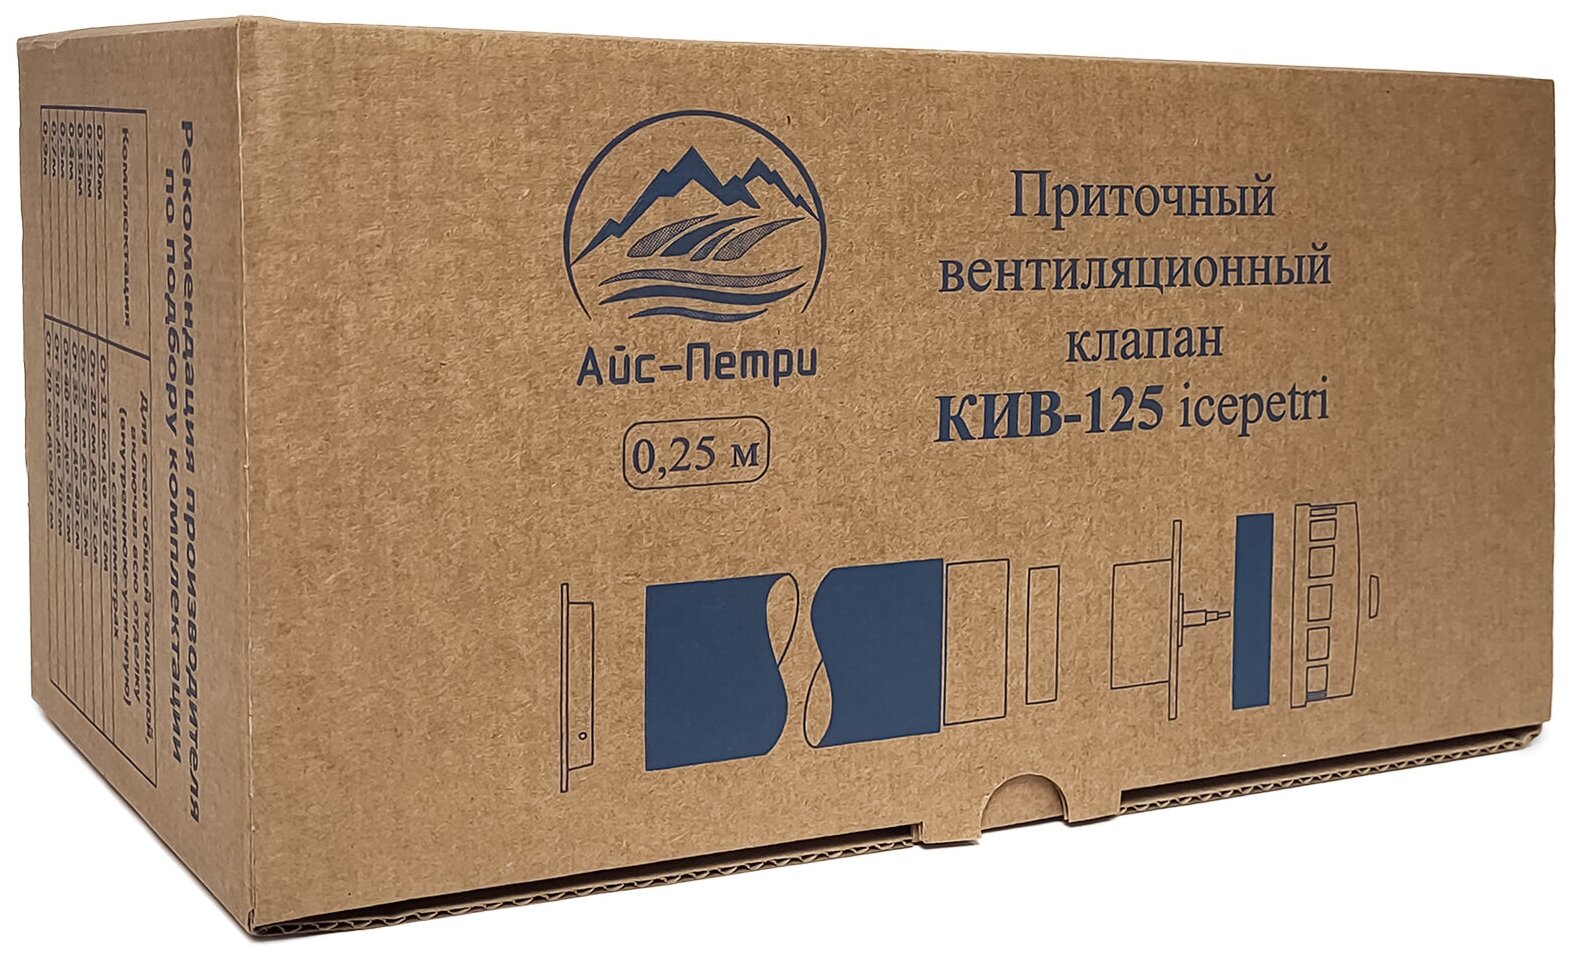 Приточный клапан КИВ-125 icepetri 250мм с к. базальтом и серой ASA-пластиковой реш. в фирменной коробке - фотография № 4